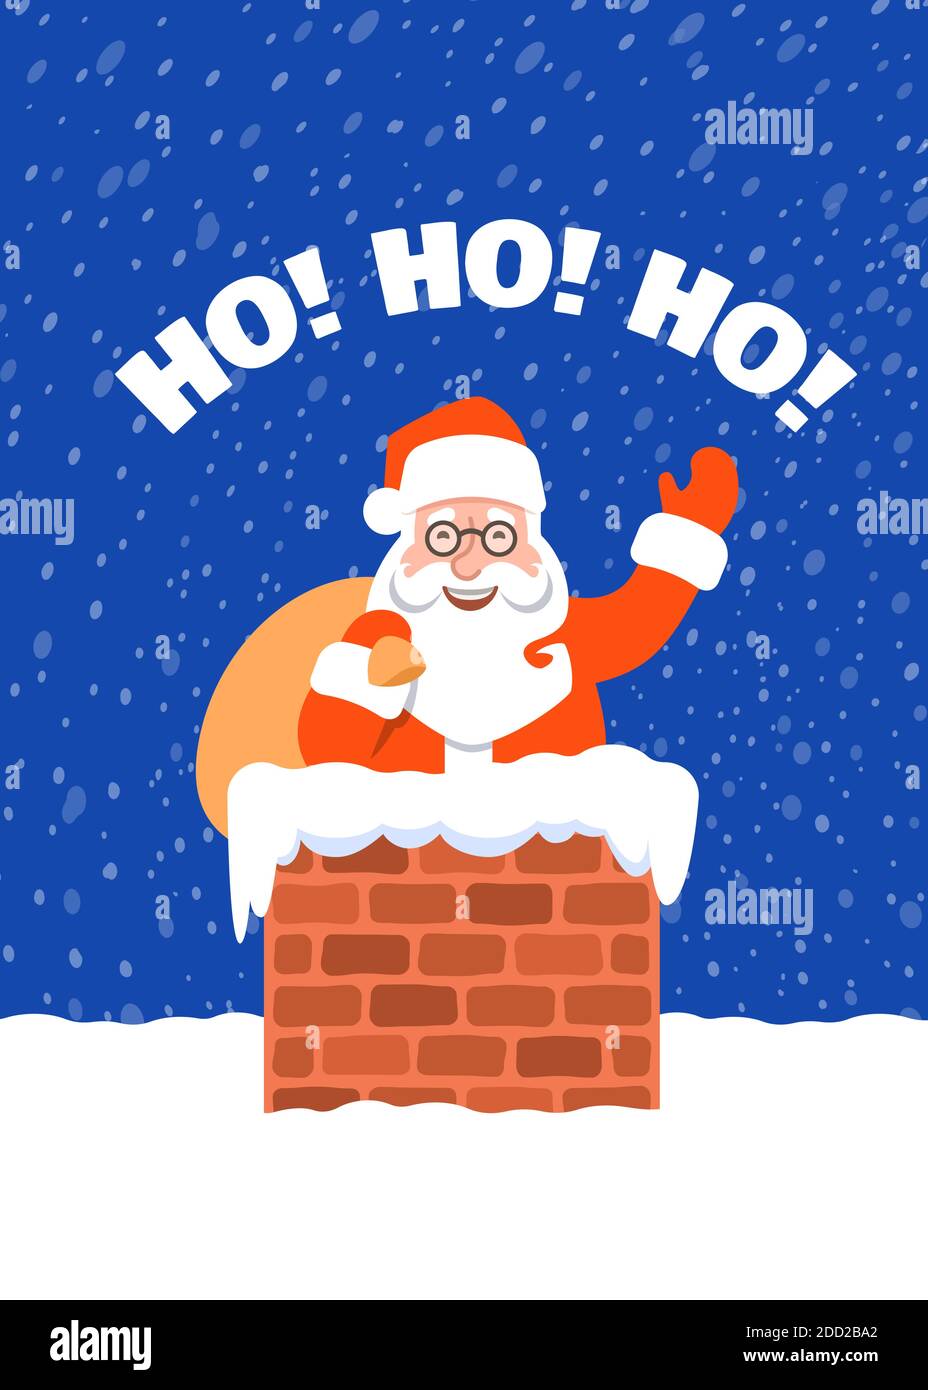 Weihnachtsmann mit Geschenktüte in einem Kamin auf einem Dach. Cartoon Vektorgrafik. Verschneite Heiligabend Nacht. Lustige Weihnachten Grußkarte w Stock Vektor